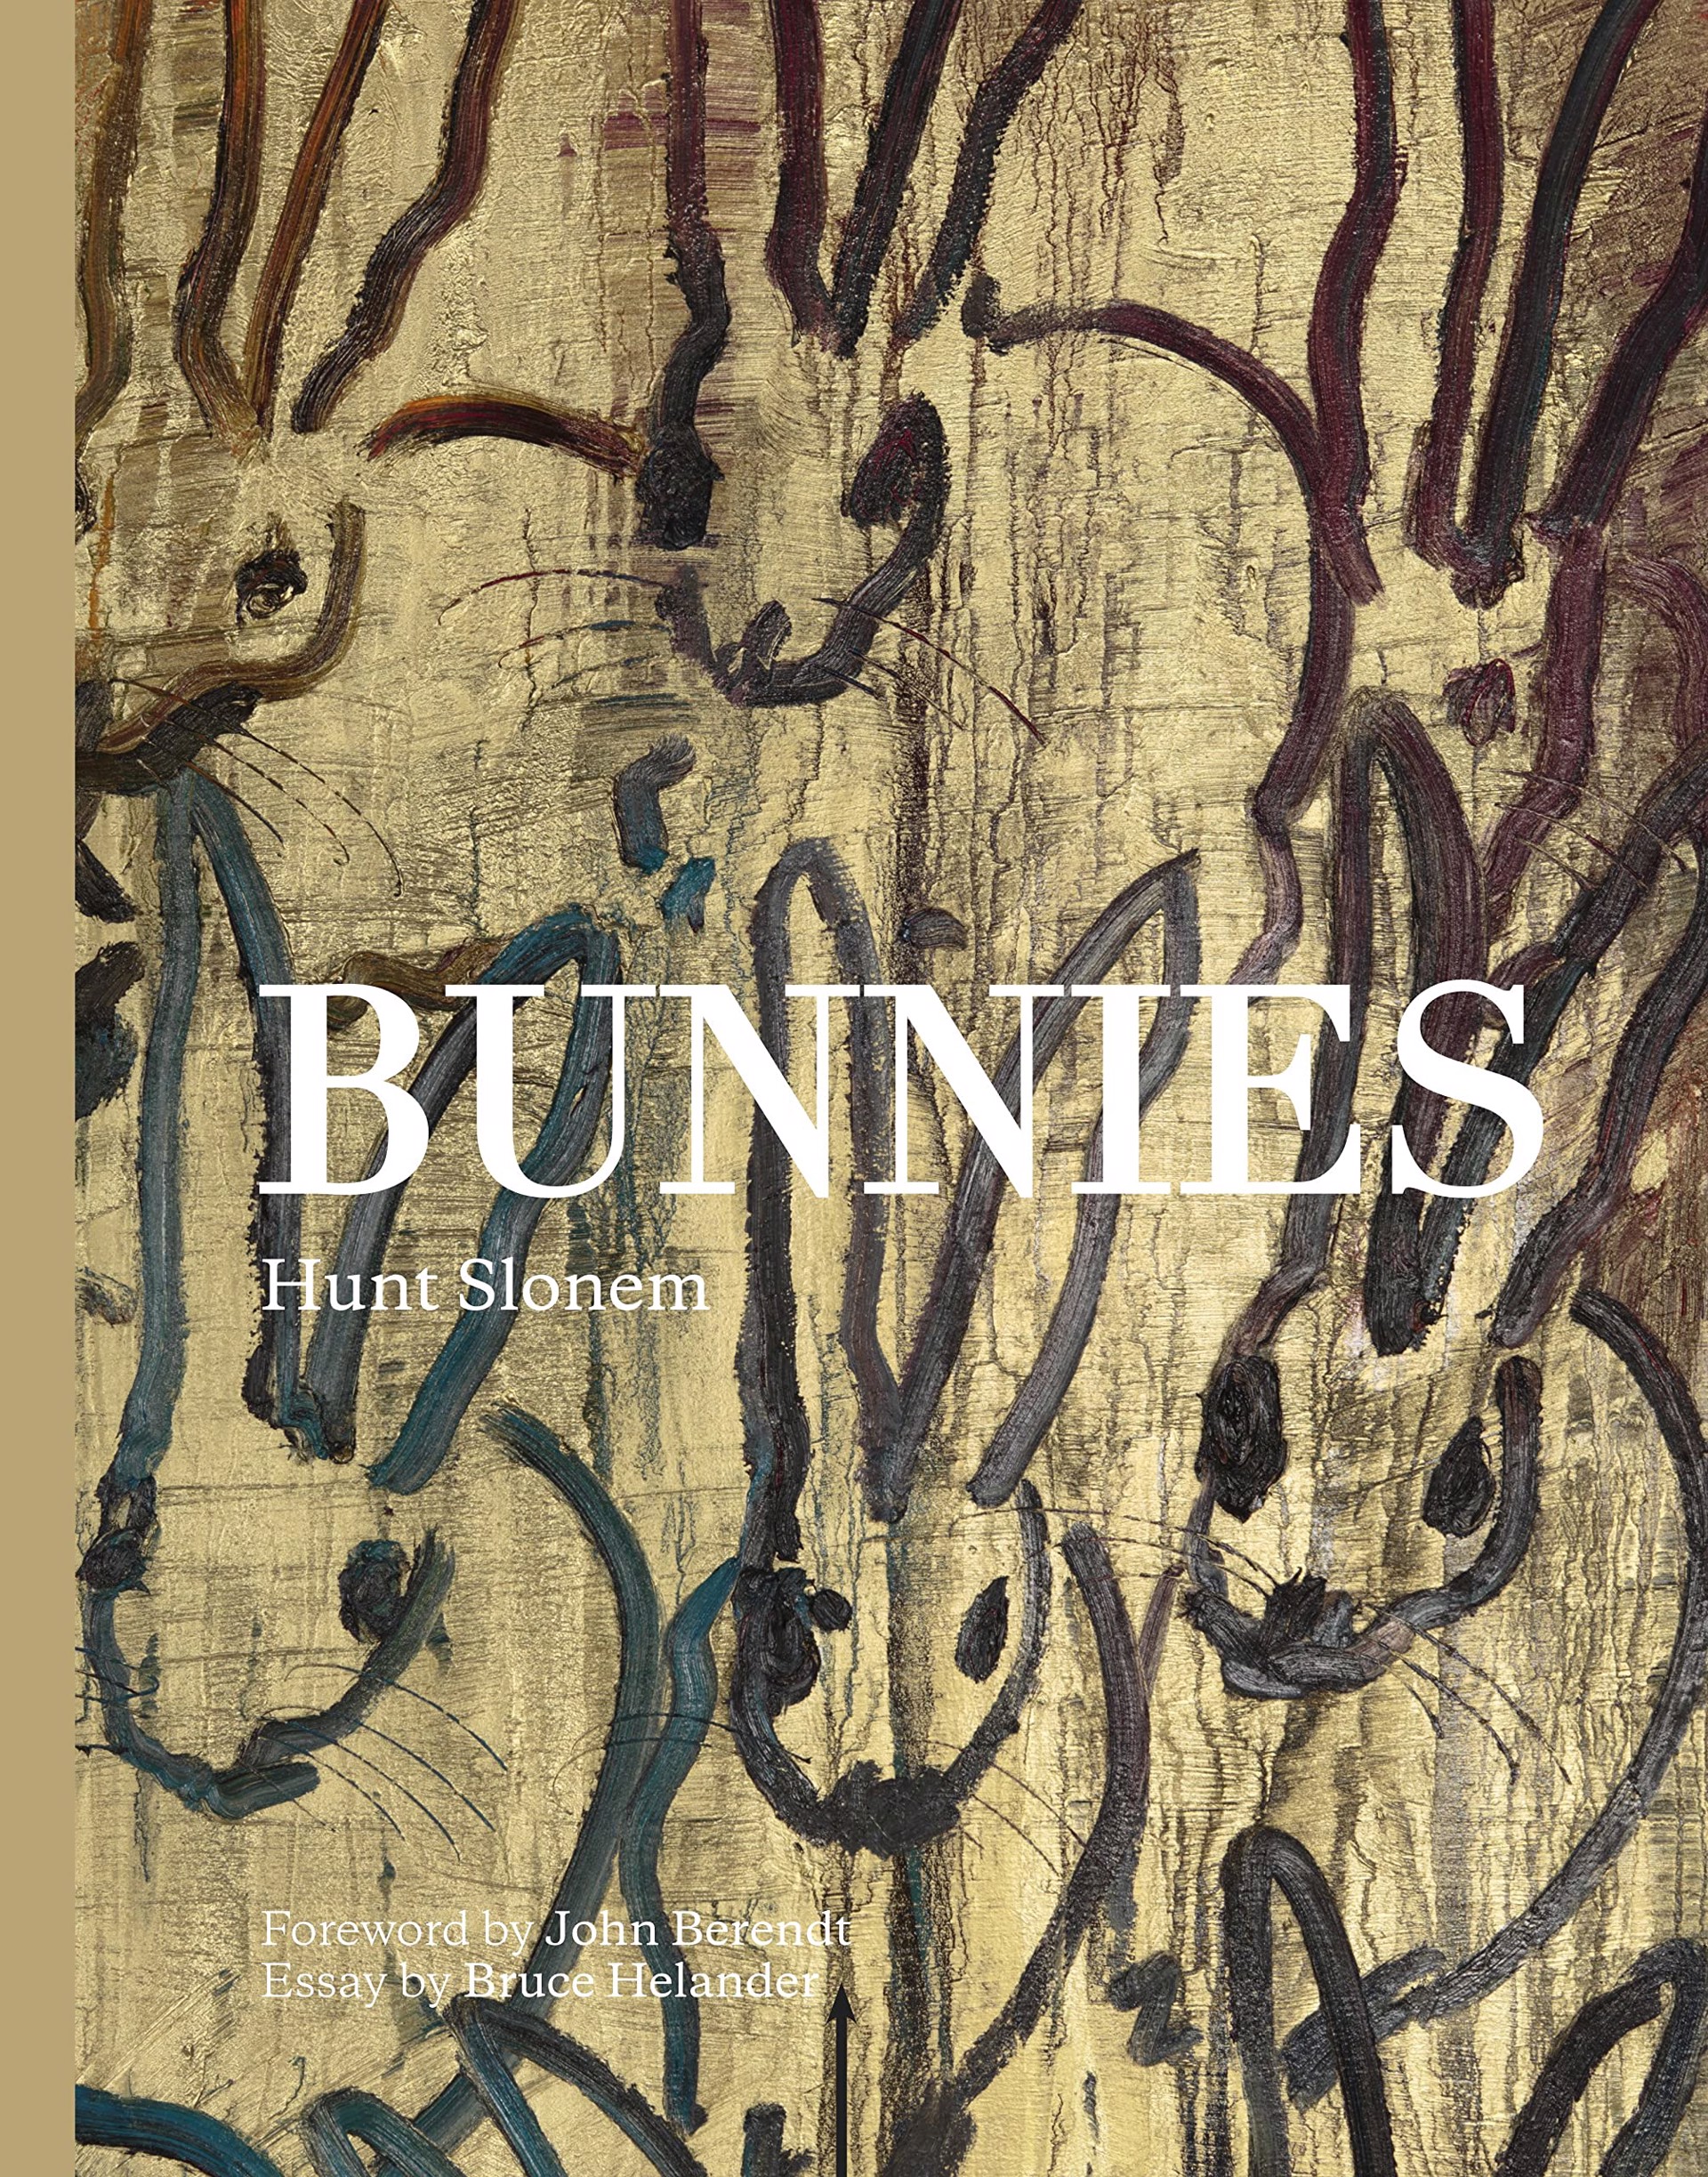 Bunnies by Hunt Slonem (Hop Up Shop)